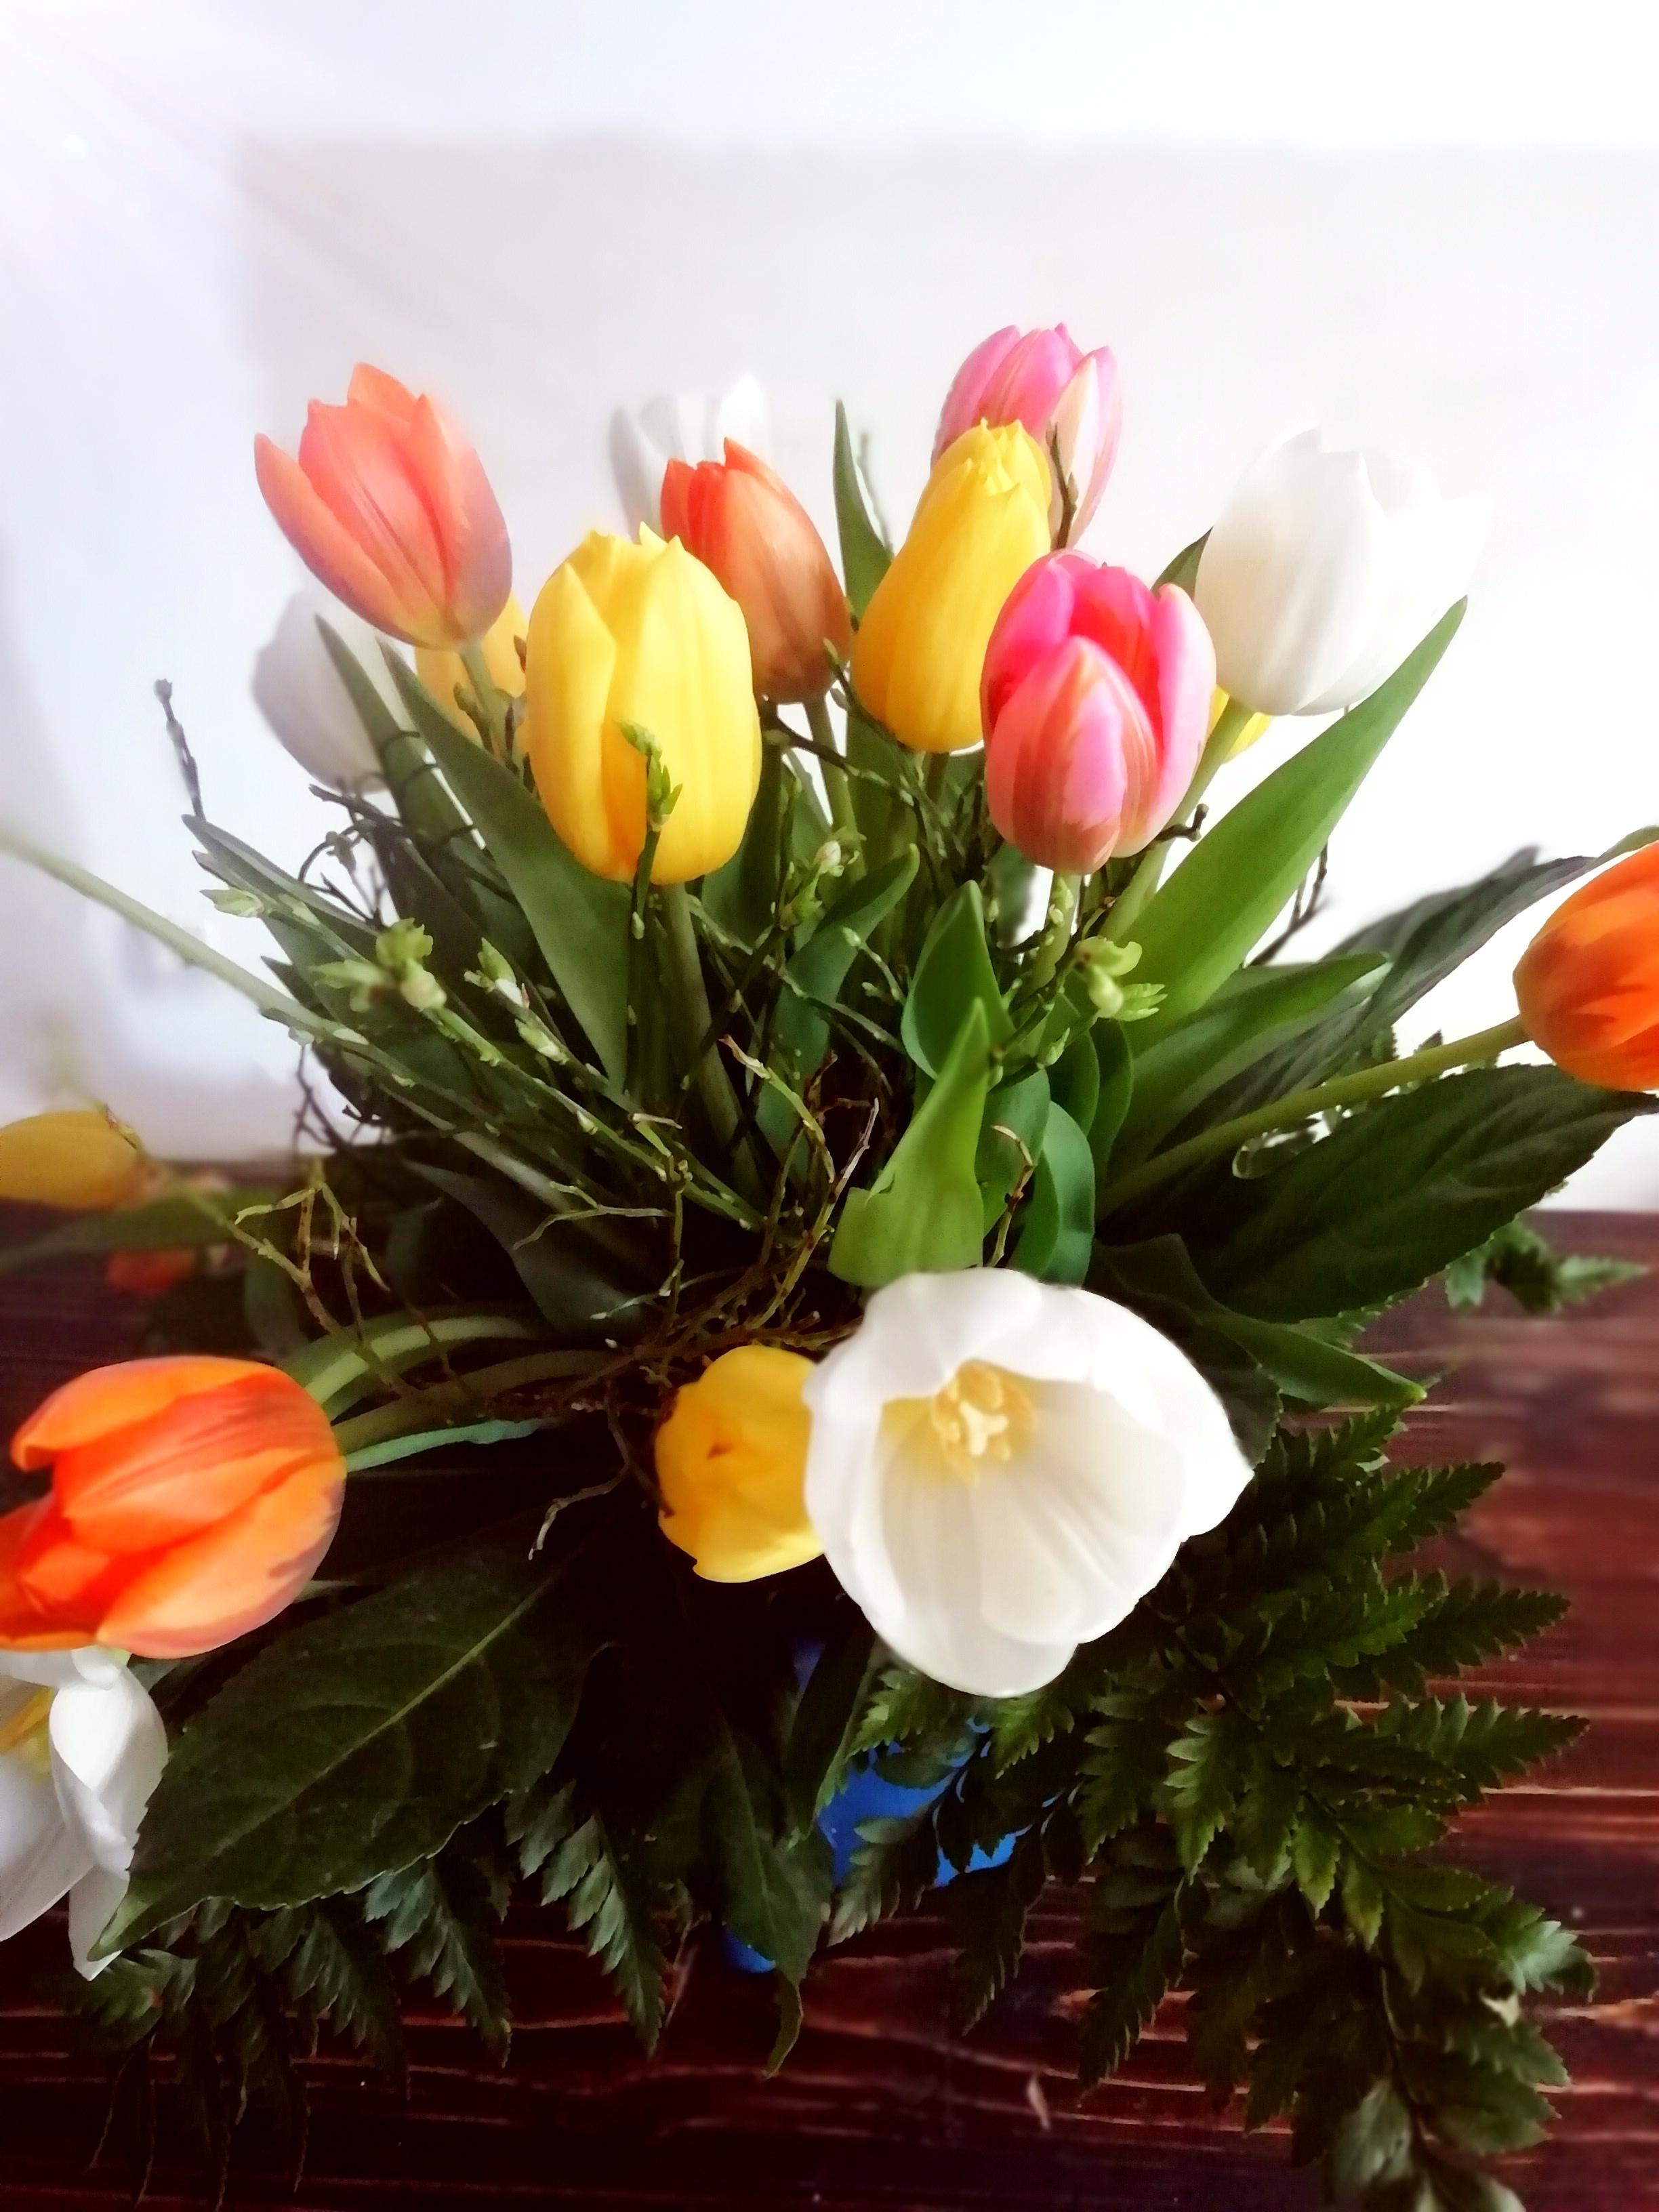 Bunt, bunter - schöne Ostern 🐰
#Tulpen #Frühling #bunterStrauß